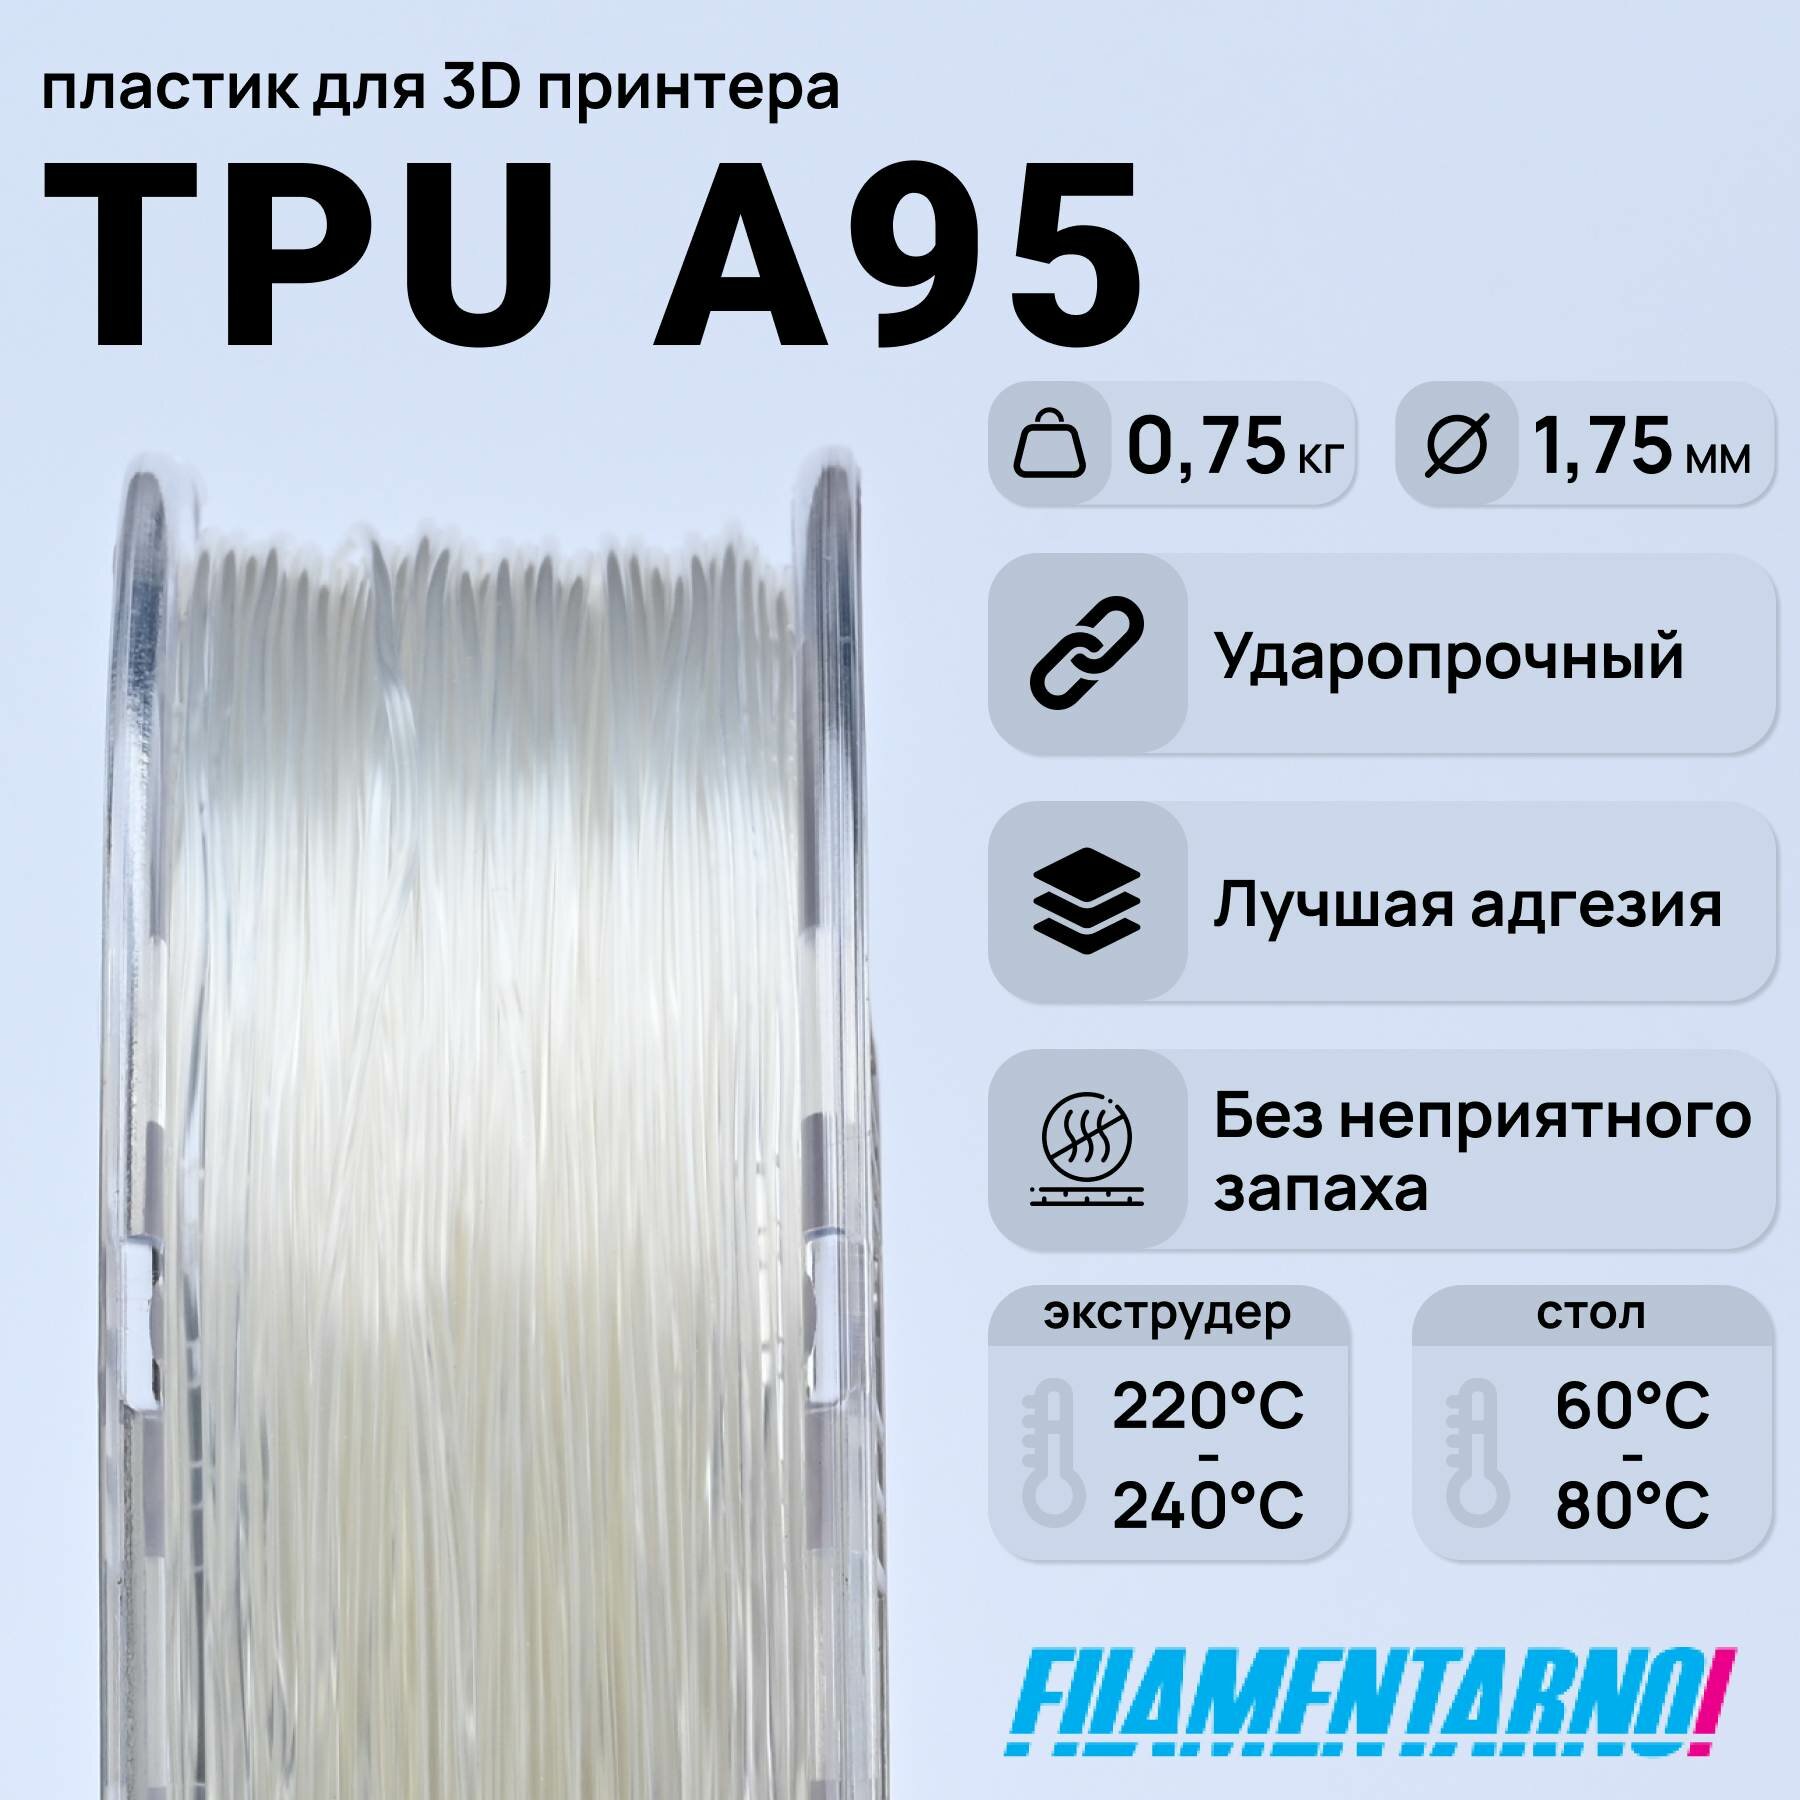 TPU A95  750 , 1,75 ,  Filamentarno  3D-